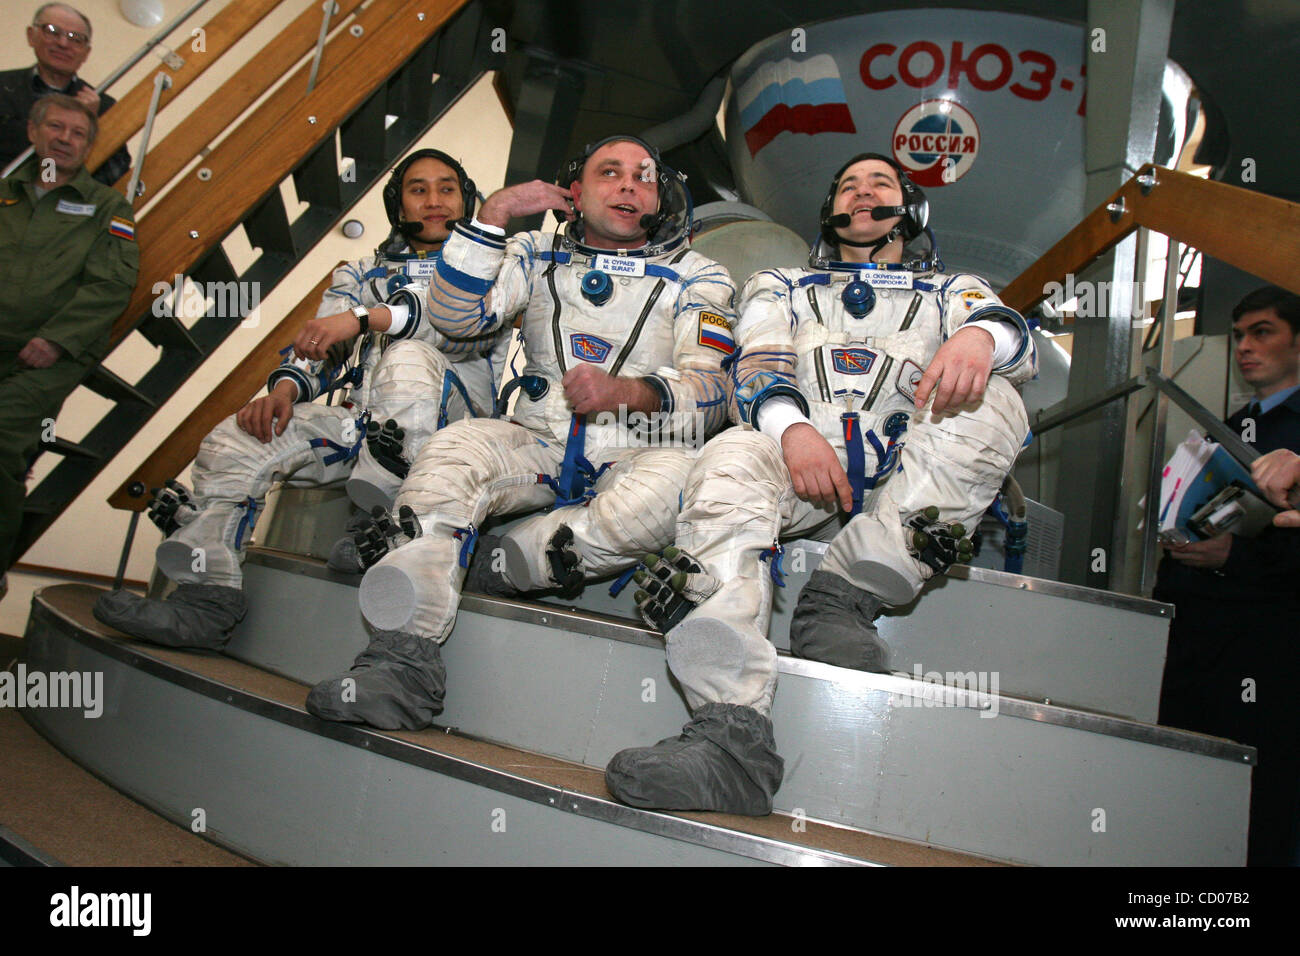 Die 3-köpfige Crew der 17. Expedition zur internationalen Raumstation ISS während der komplexen Trainings im Sternenstädtchen bei Moskau. (von links nach rechts): südkoreanische Astronaut Ko San, russische Kosmonauten Maksim Suraev und Oleg Skripochka Stockfoto